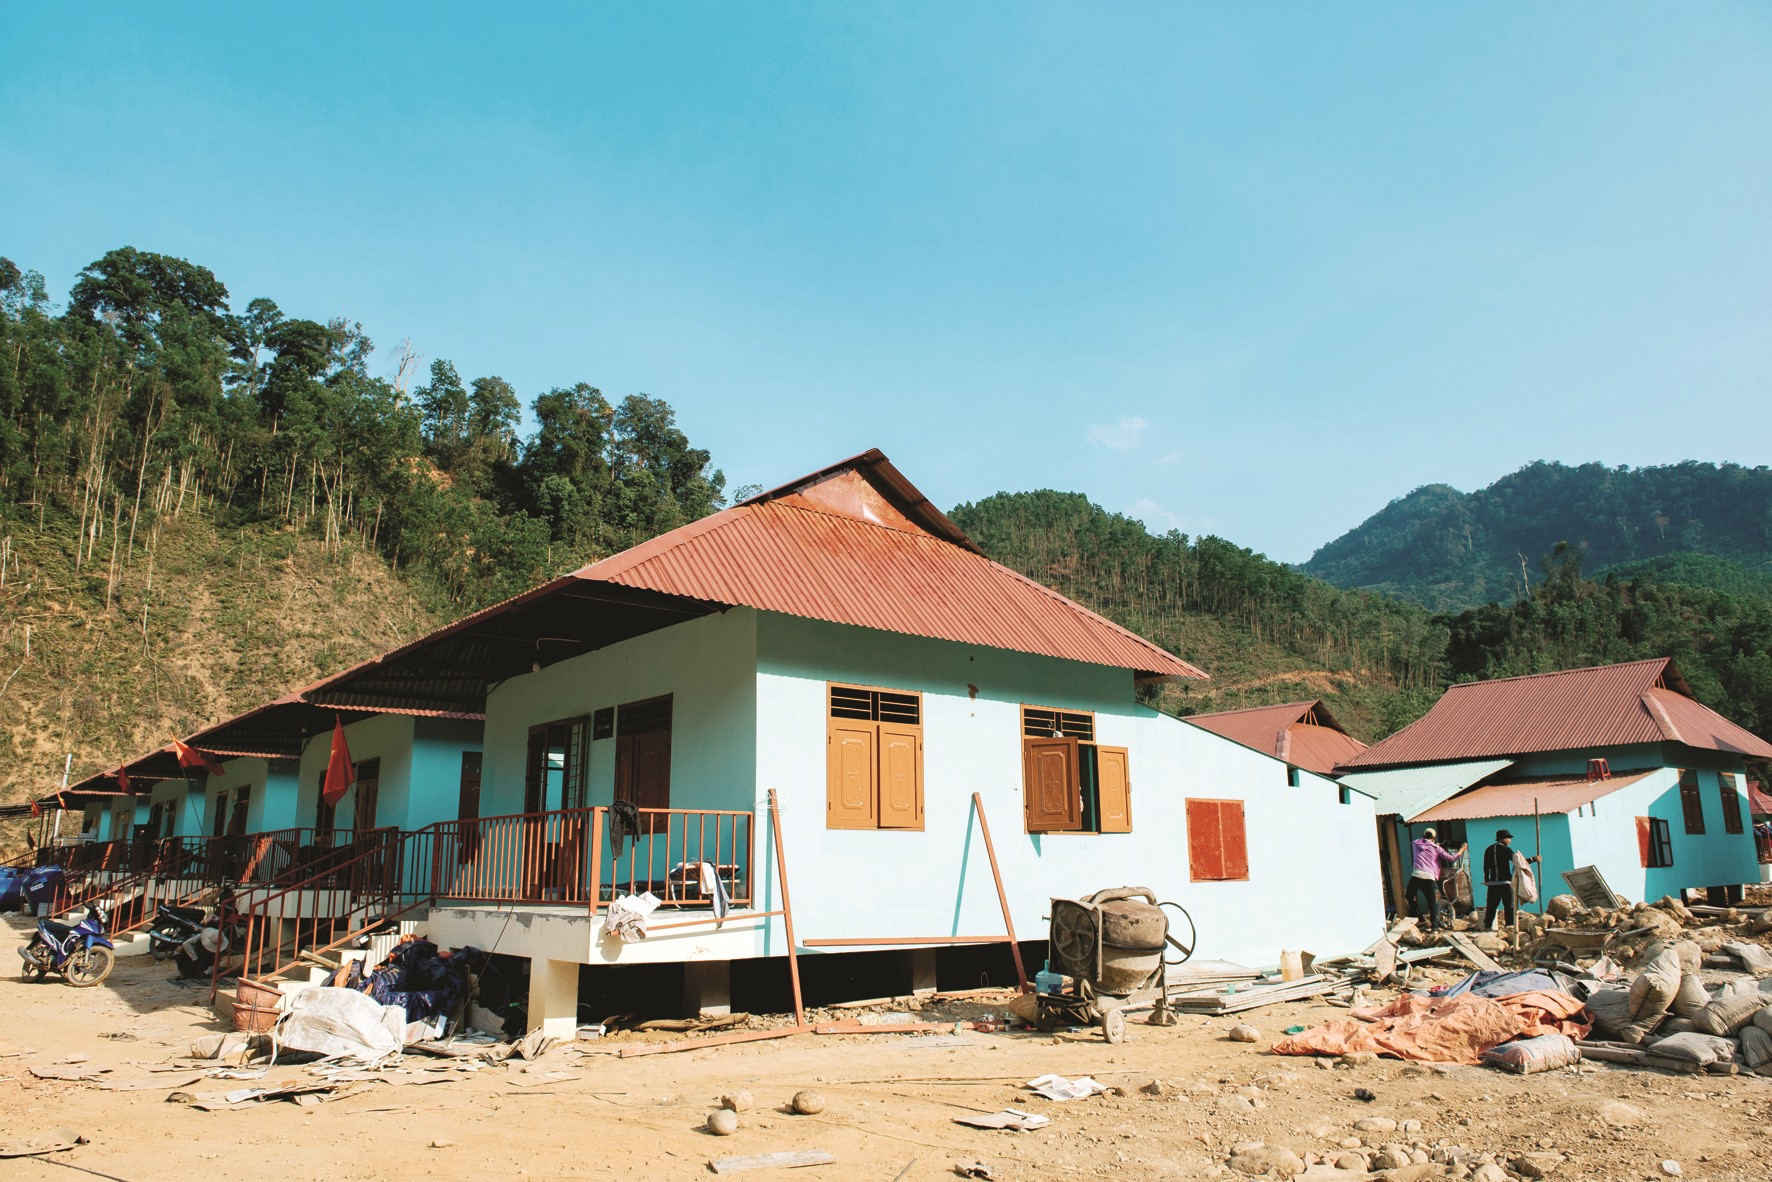 Đầu tháng 2 vừa qua, UBND huyện Nam Trà My phối hợp với Công ty CP Ô tô Trường Hải (Thaco) bàn giao 13 căn nhà (Thaco tài trợ 5 tỷ đồng xây dựng) cho người dân đón tết.